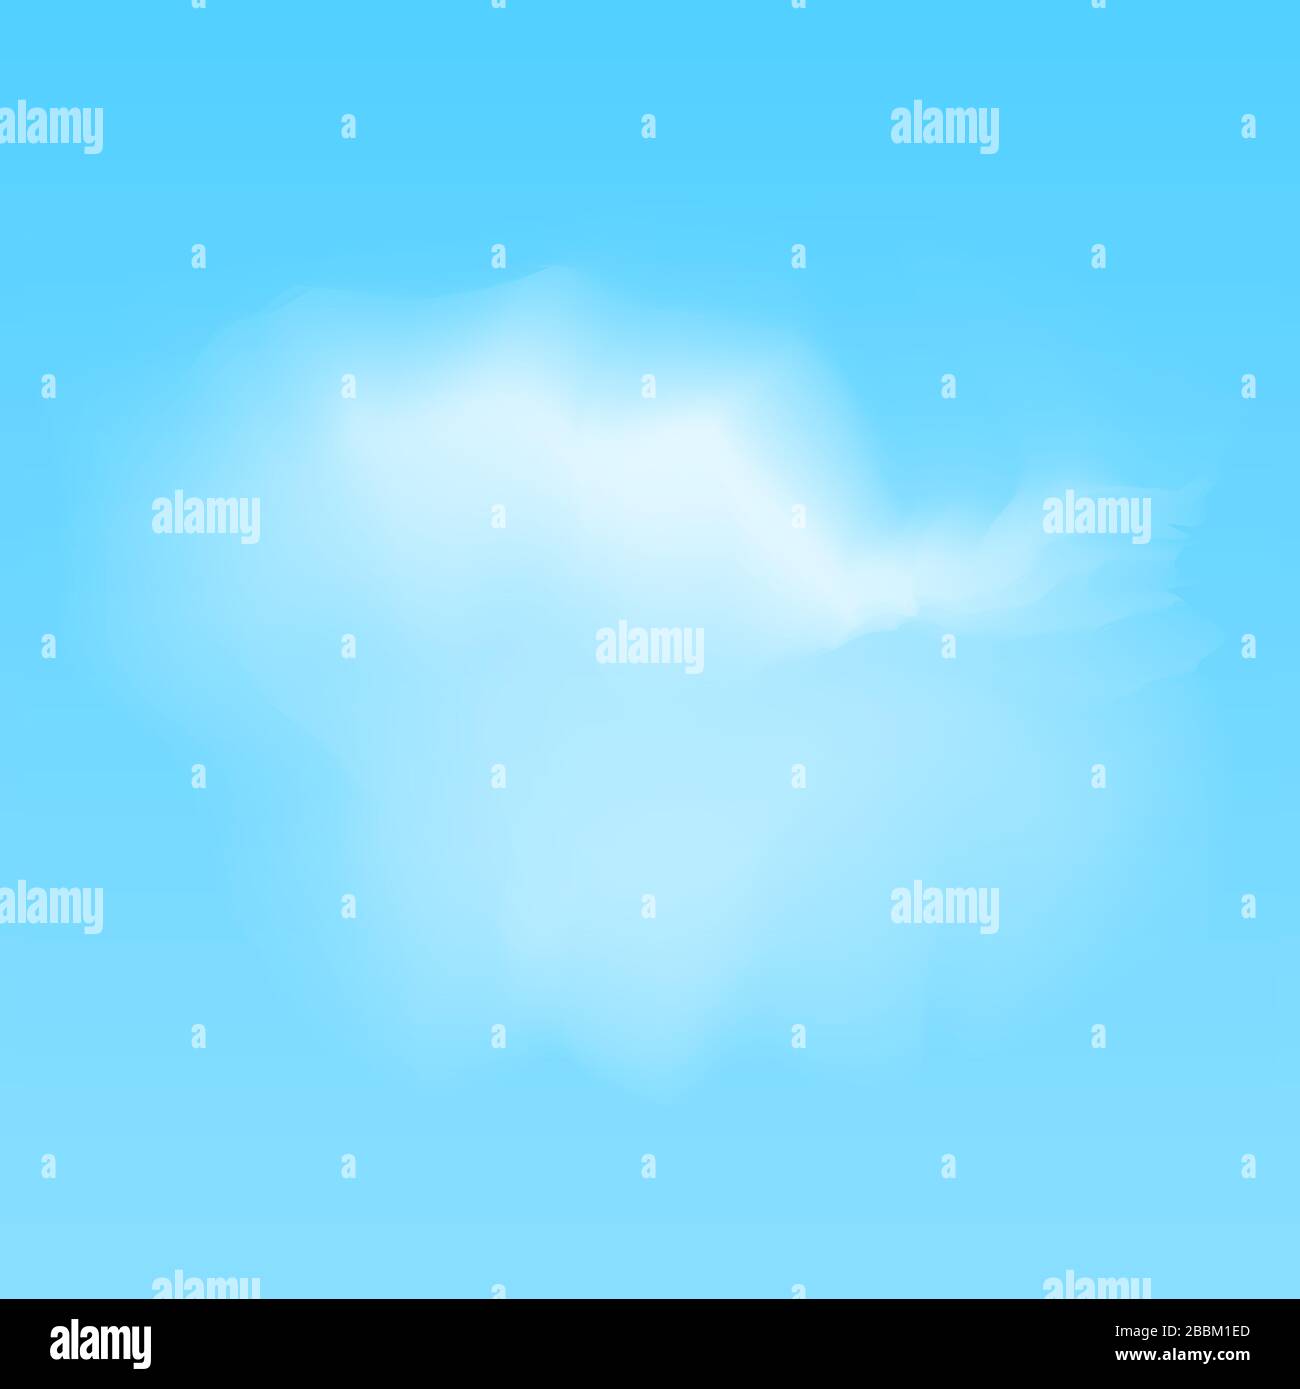 ilustración vectorial de nubes blancas realistas sobre fondo azul Ilustración del Vector